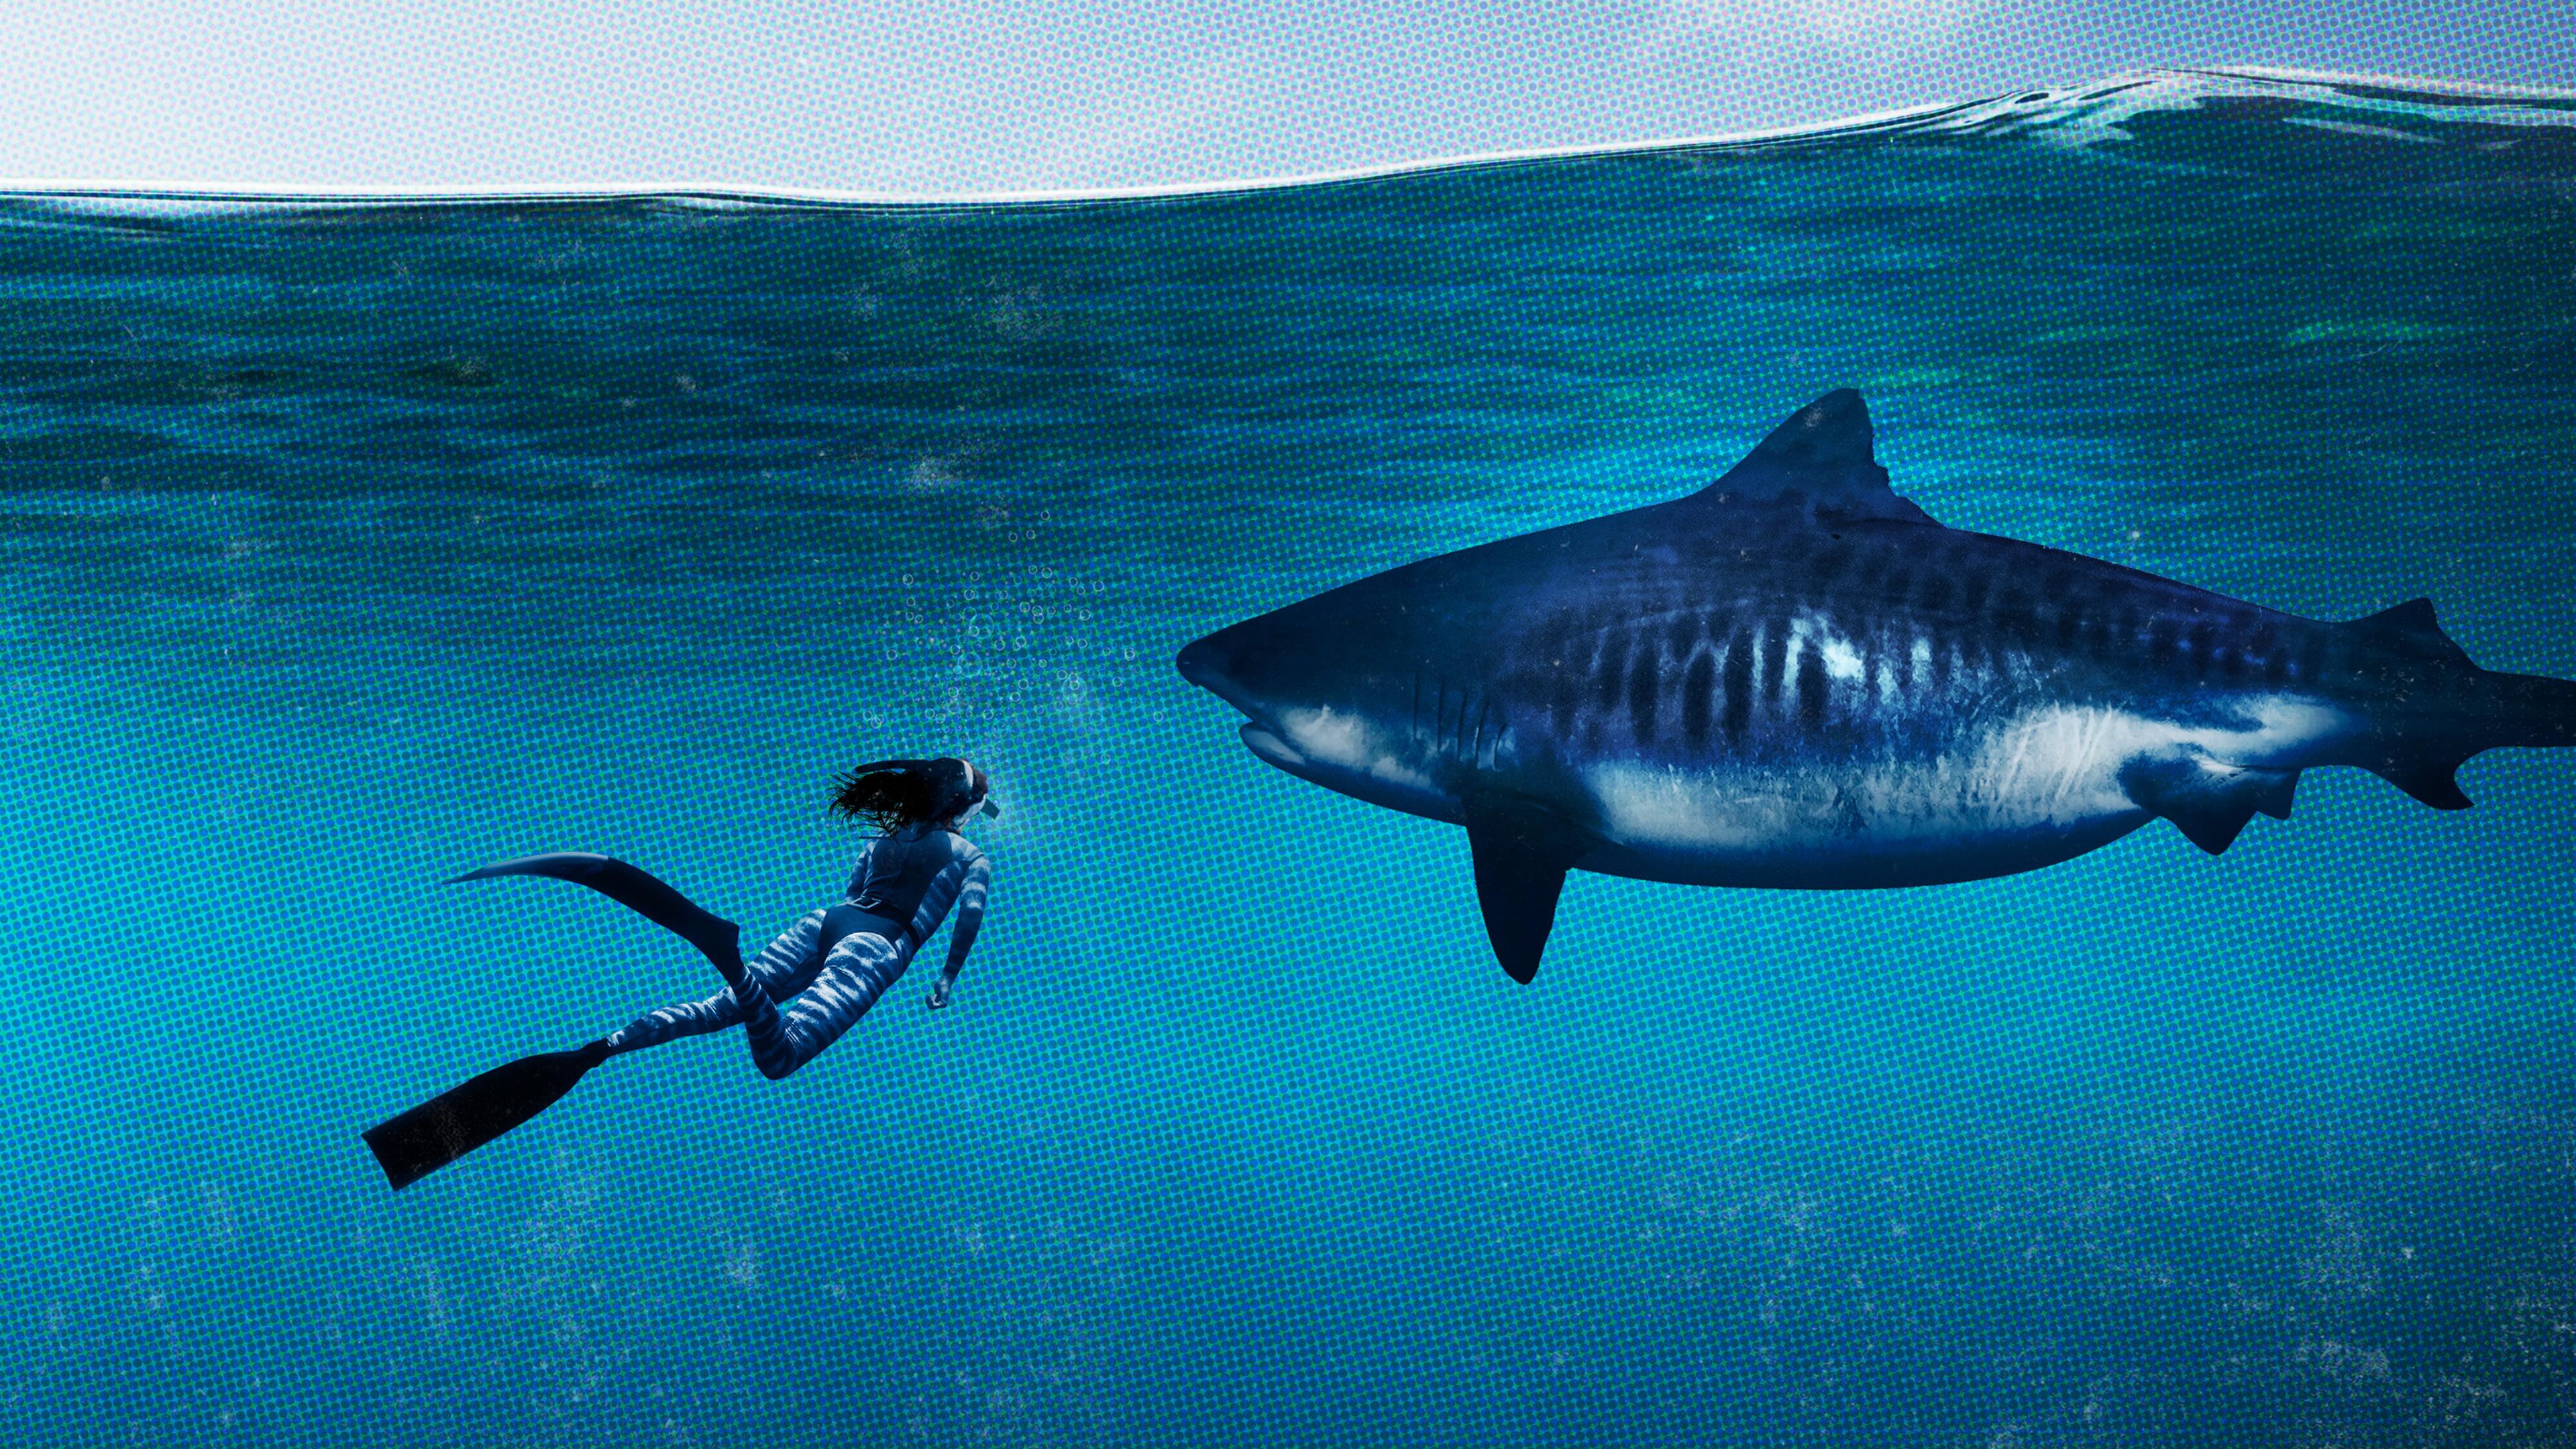 World's Biggest Tiger Shark backdrop